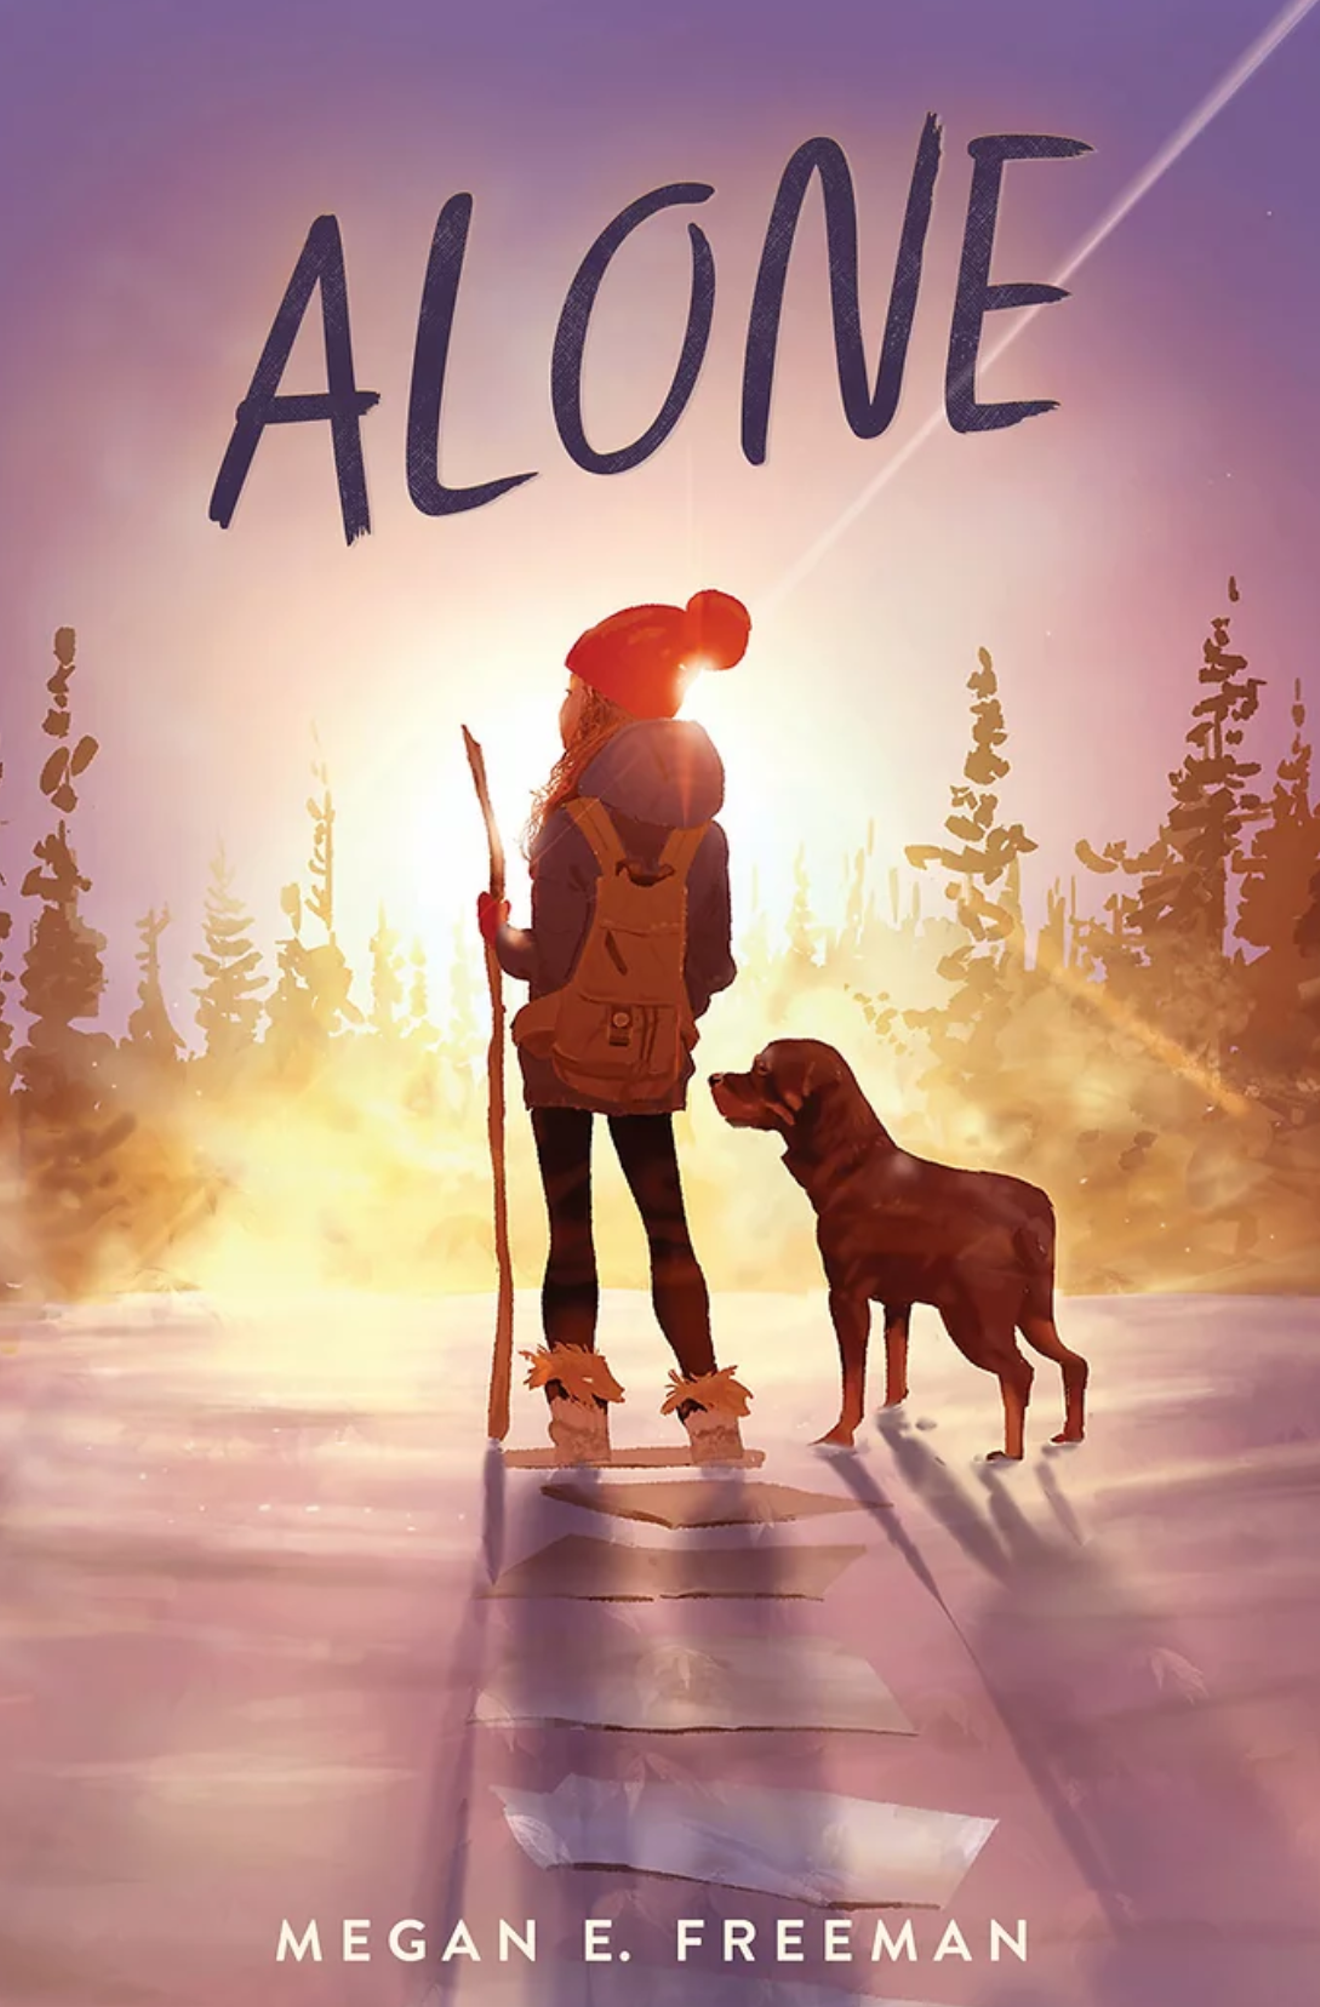 Alone is Megan E. Freeman's debut novel.